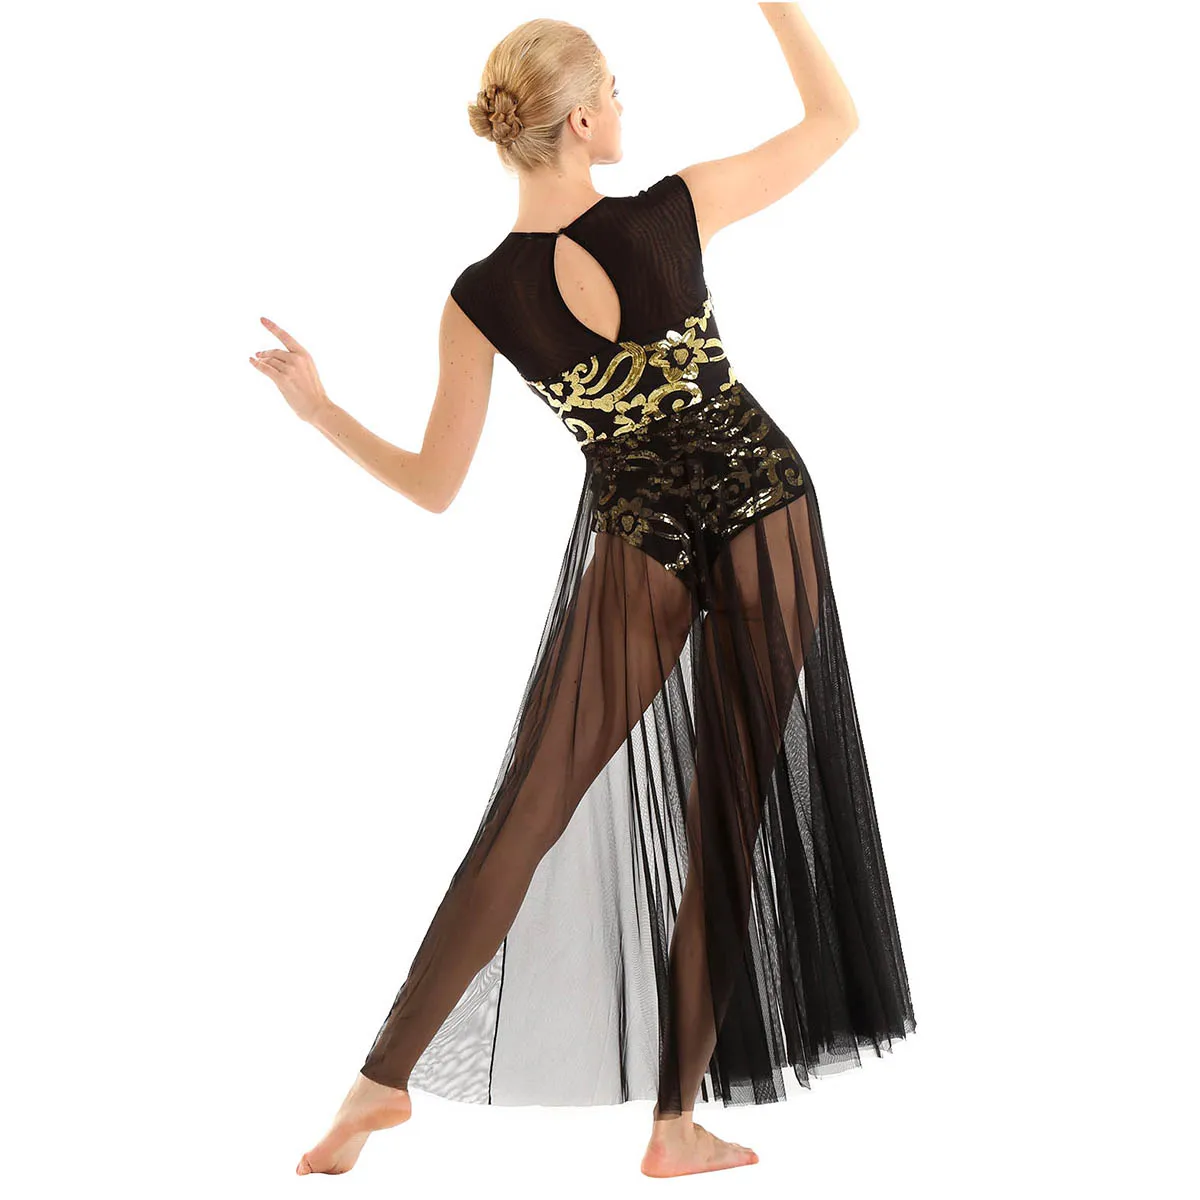 IEFiEL/Для женщин взрослый с цветочным рисунком из пайеток профессиональные балетки трико, длинное платье в пол для лиричная современный танцевальный костюм